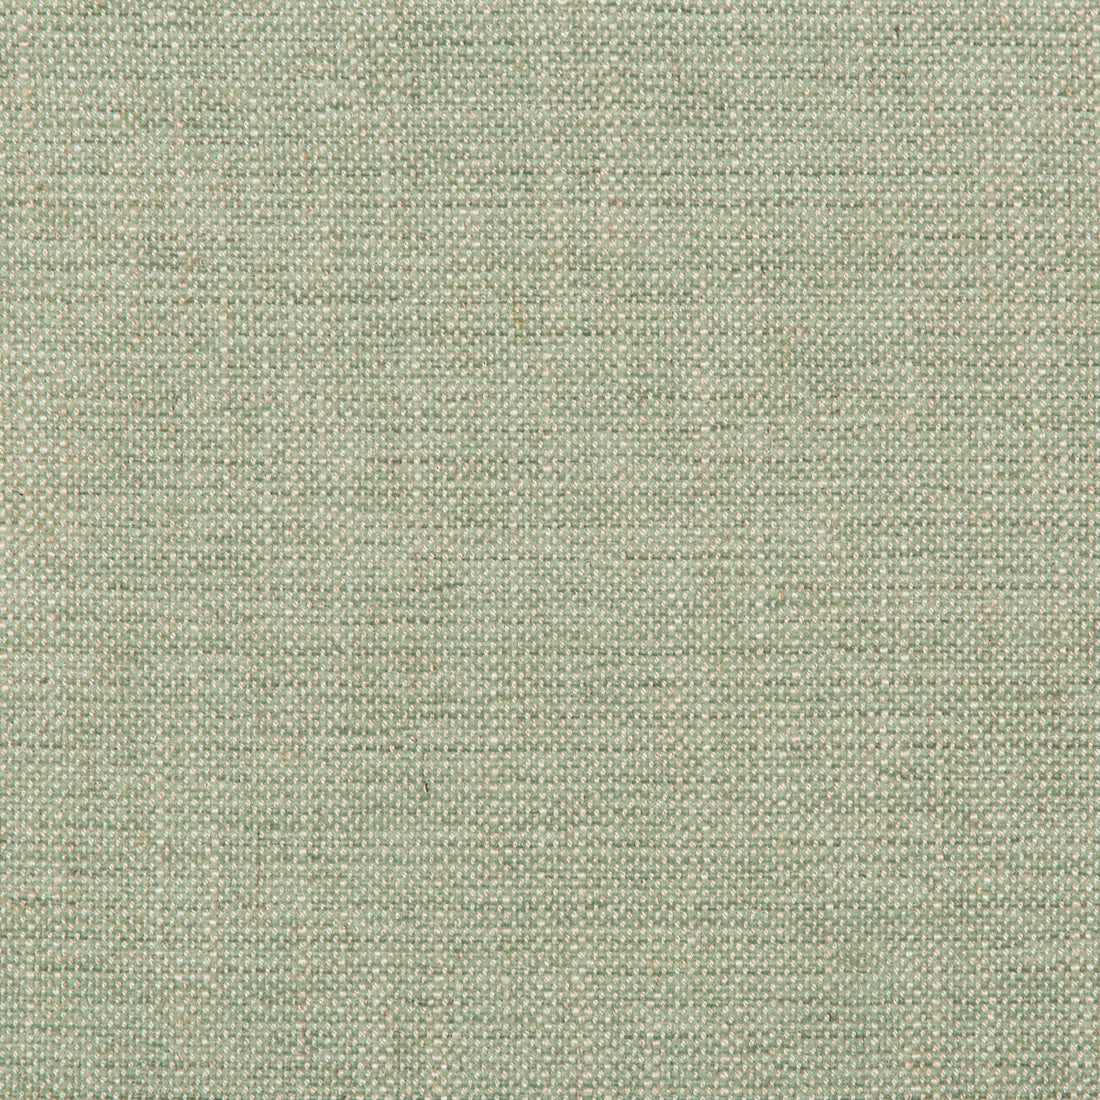 Kravet Design fabric in 35714-13 color - pattern 35714.13.0 - by Kravet Design